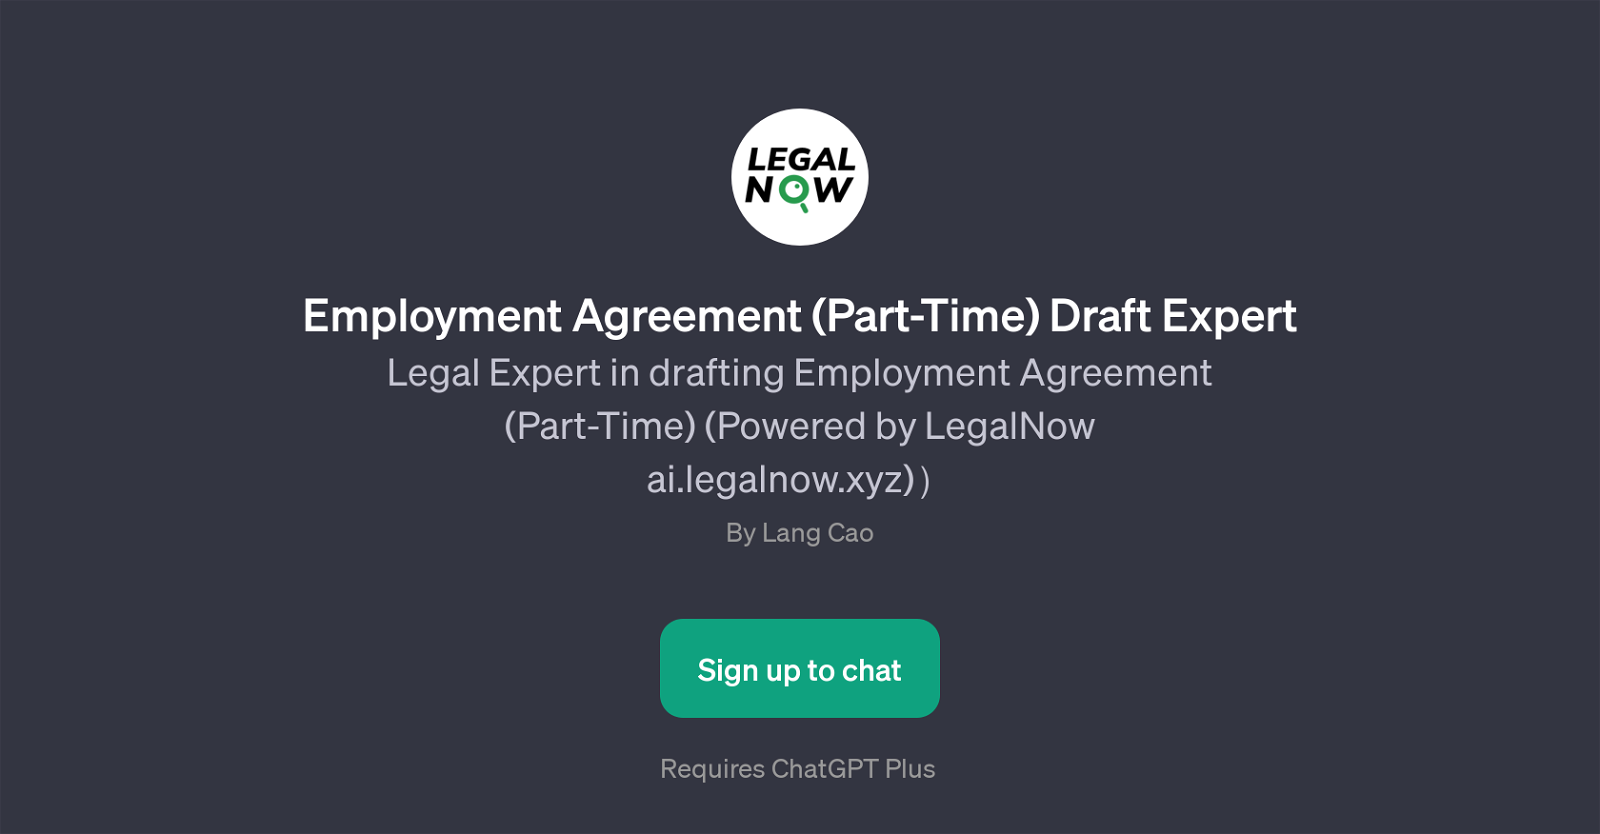 Employment Agreement (Part-Time) Draft Expert website